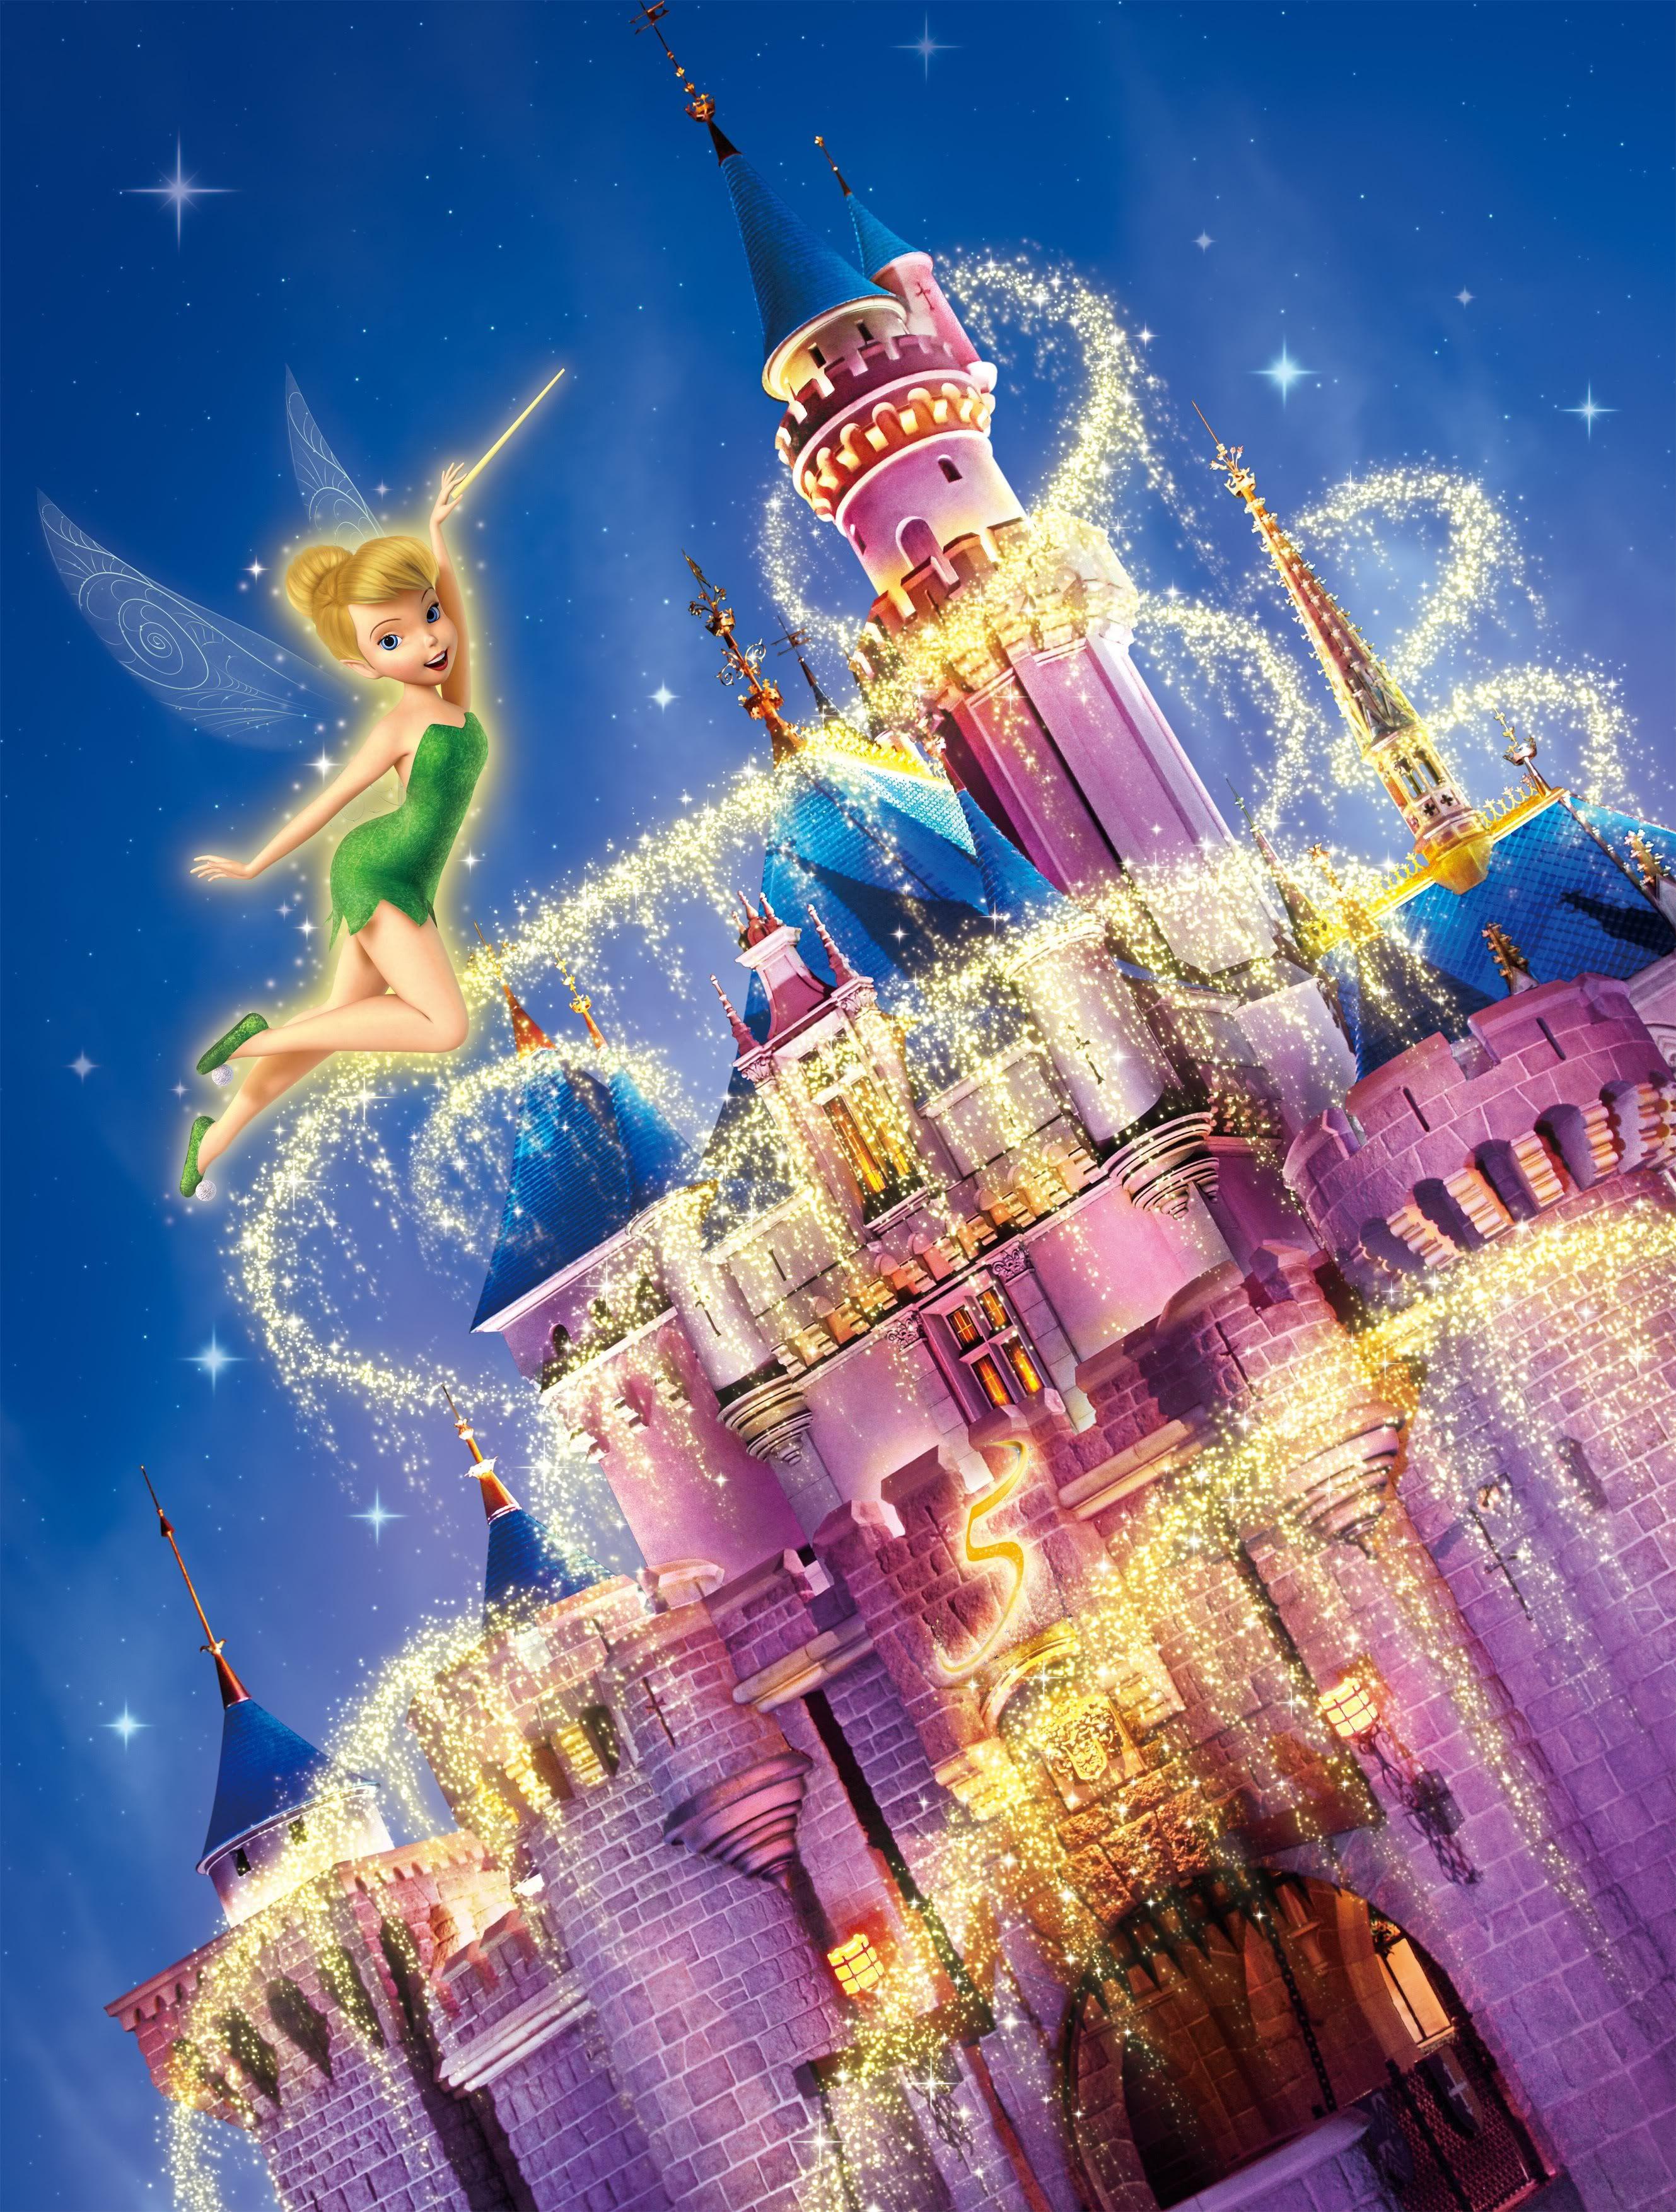 Tinkerbell Disney Castle Logo LogoDix